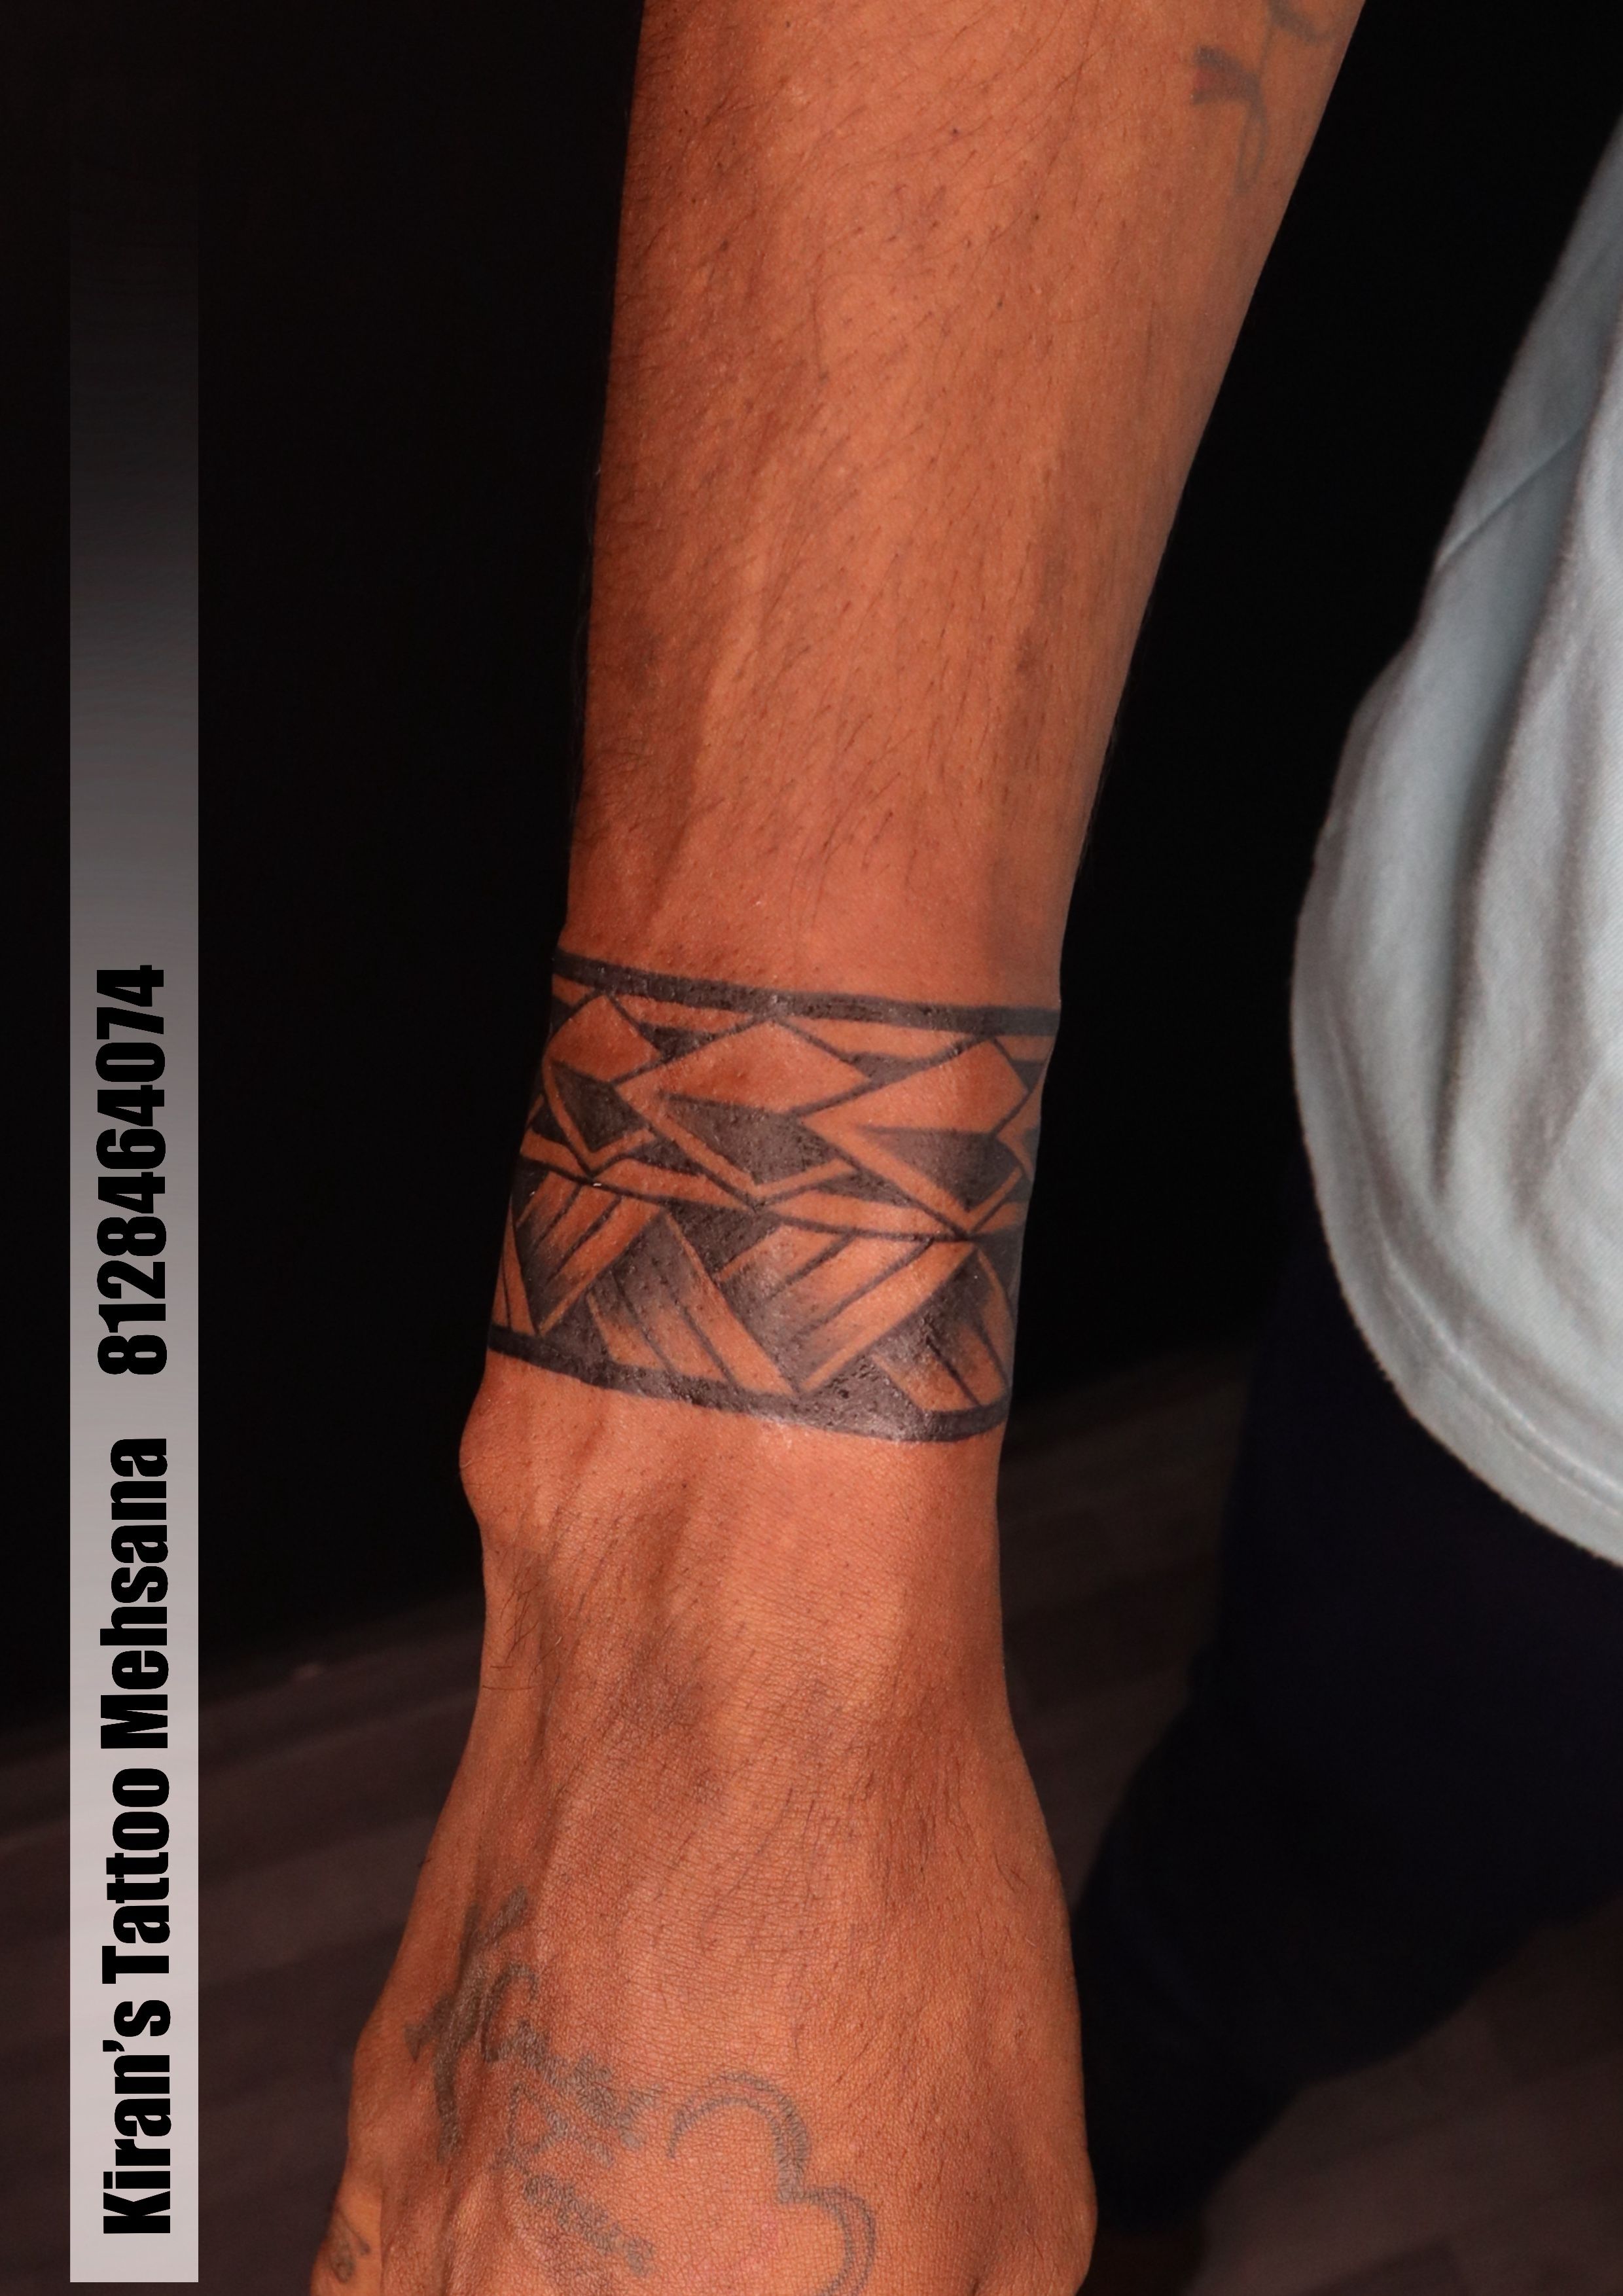 Om trishul armband tattoo | customised polynesian armband | Finger tattoos, Arm  band tattoo, Tattoos